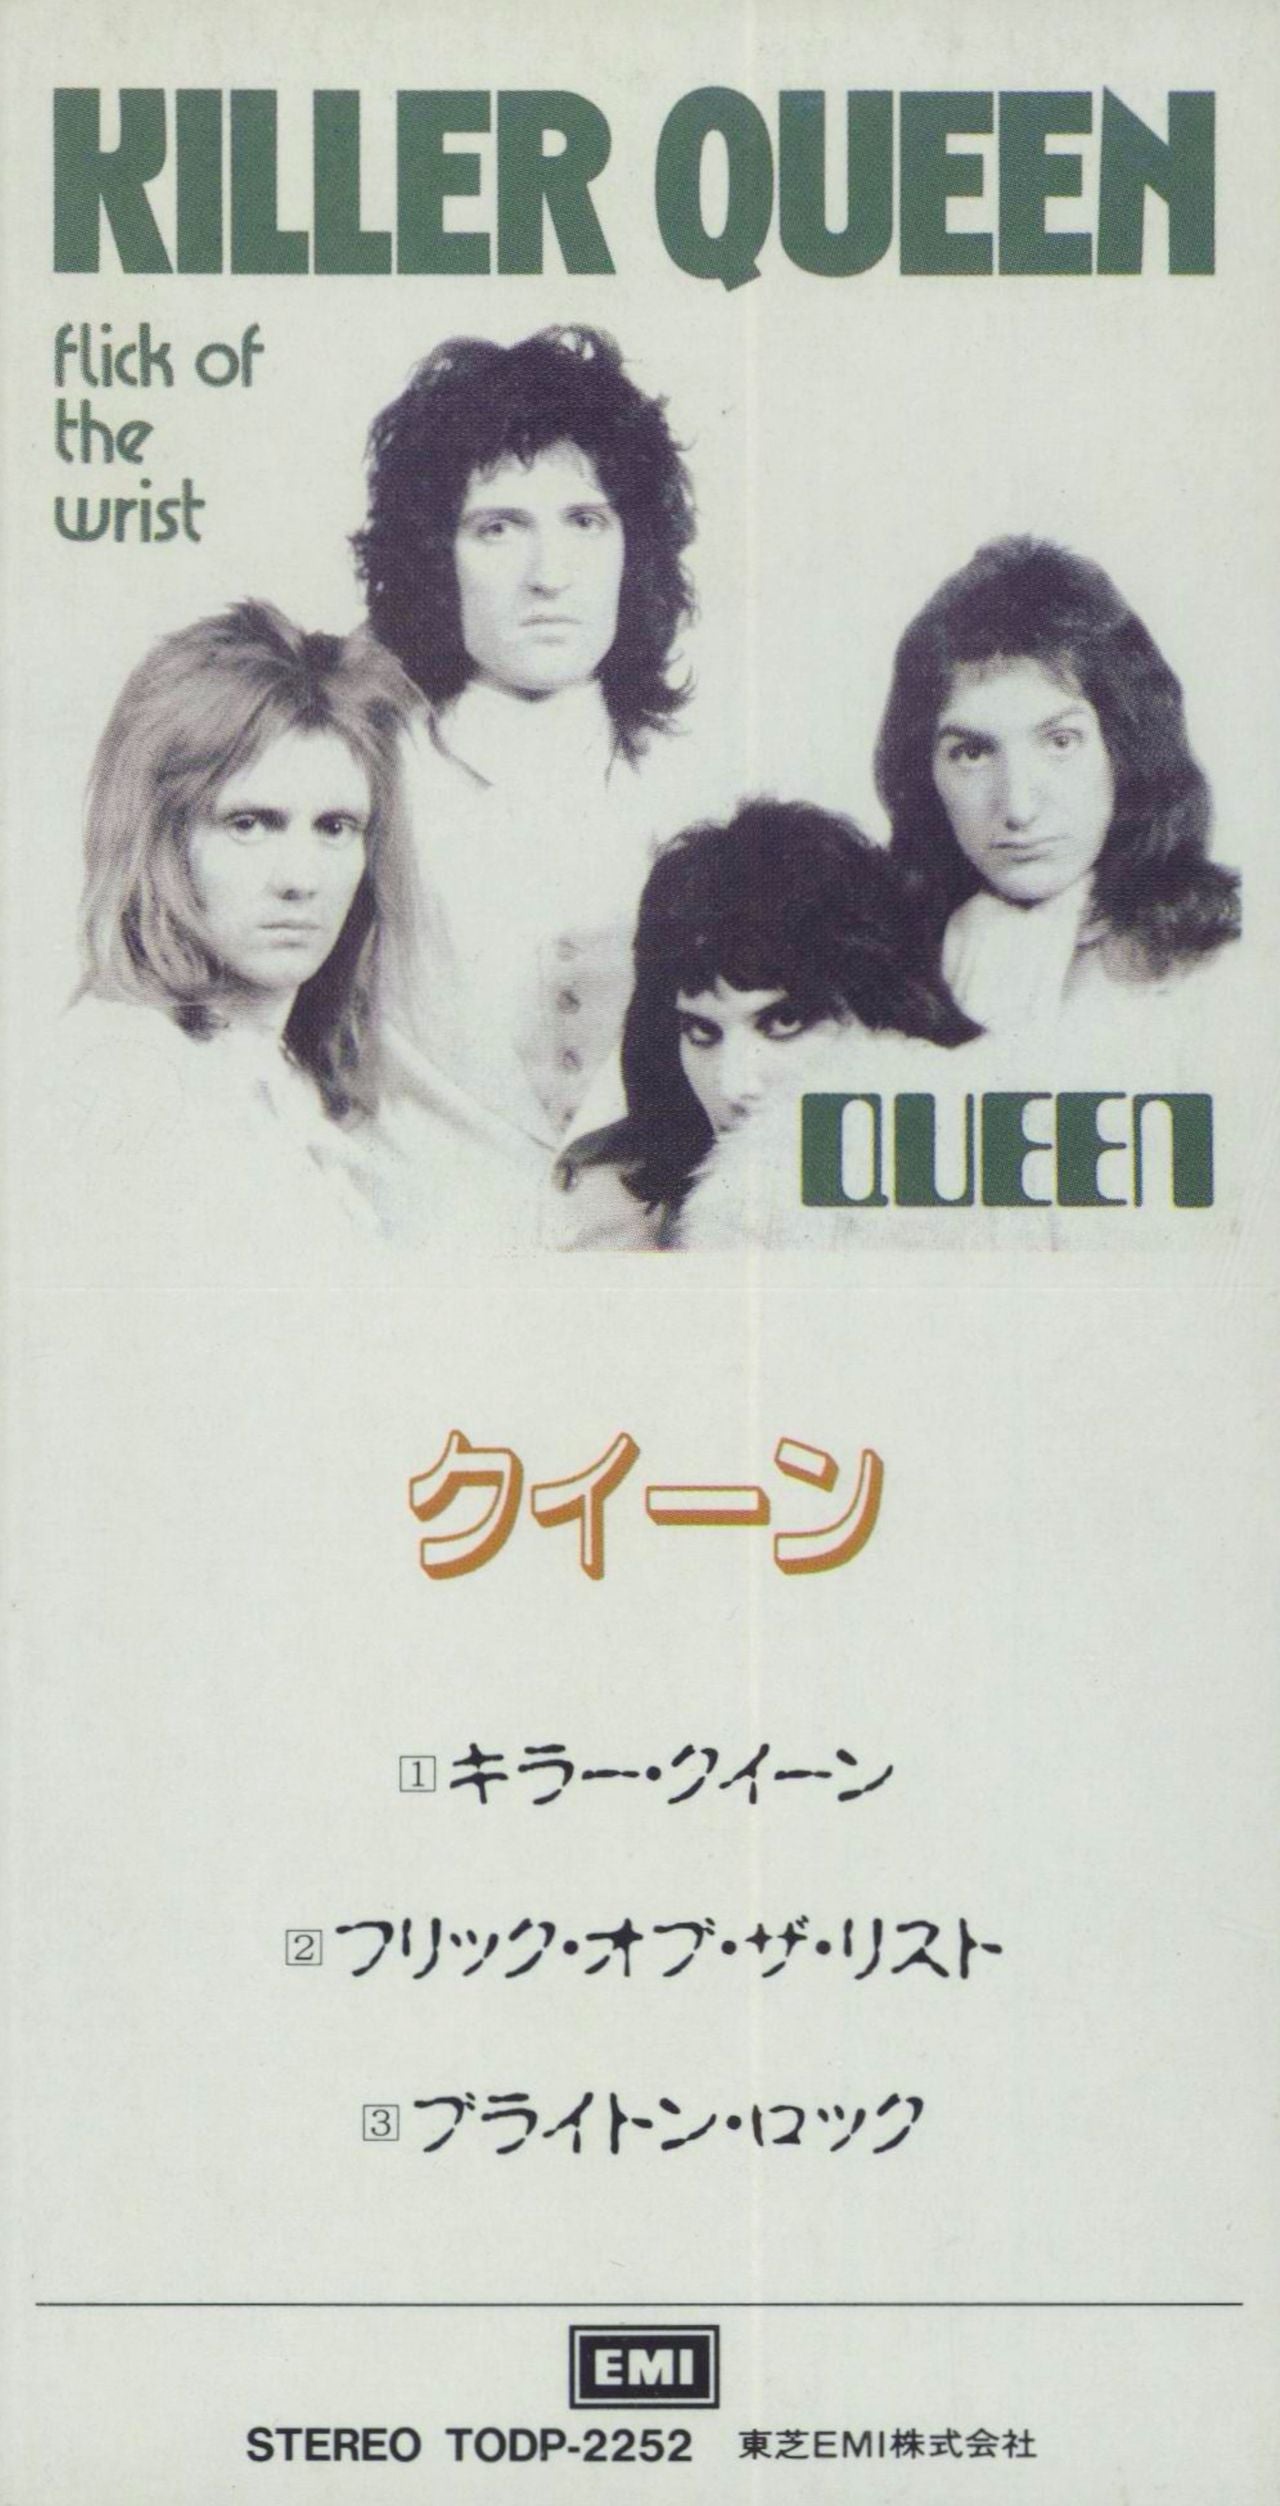 Queen Killer Queen Japanese 3 CD single — RareVinyl.com